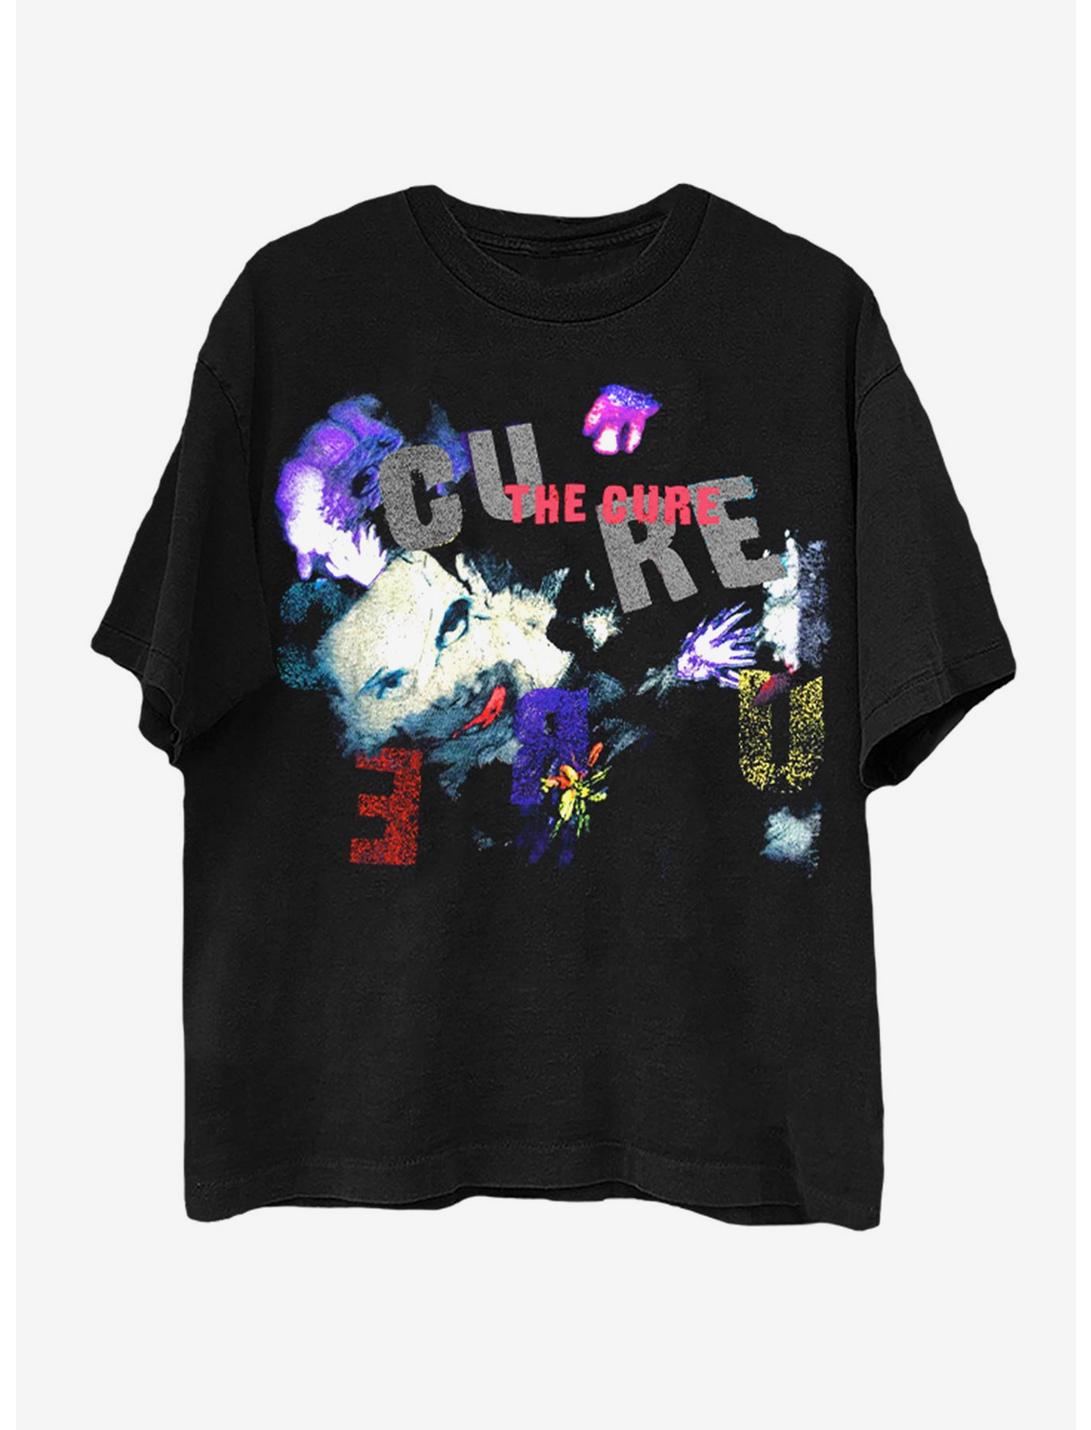 The Cure The Prayer Tour 1989 Boyfriend Fit Girls T-Shirt, BLACK, hi-res